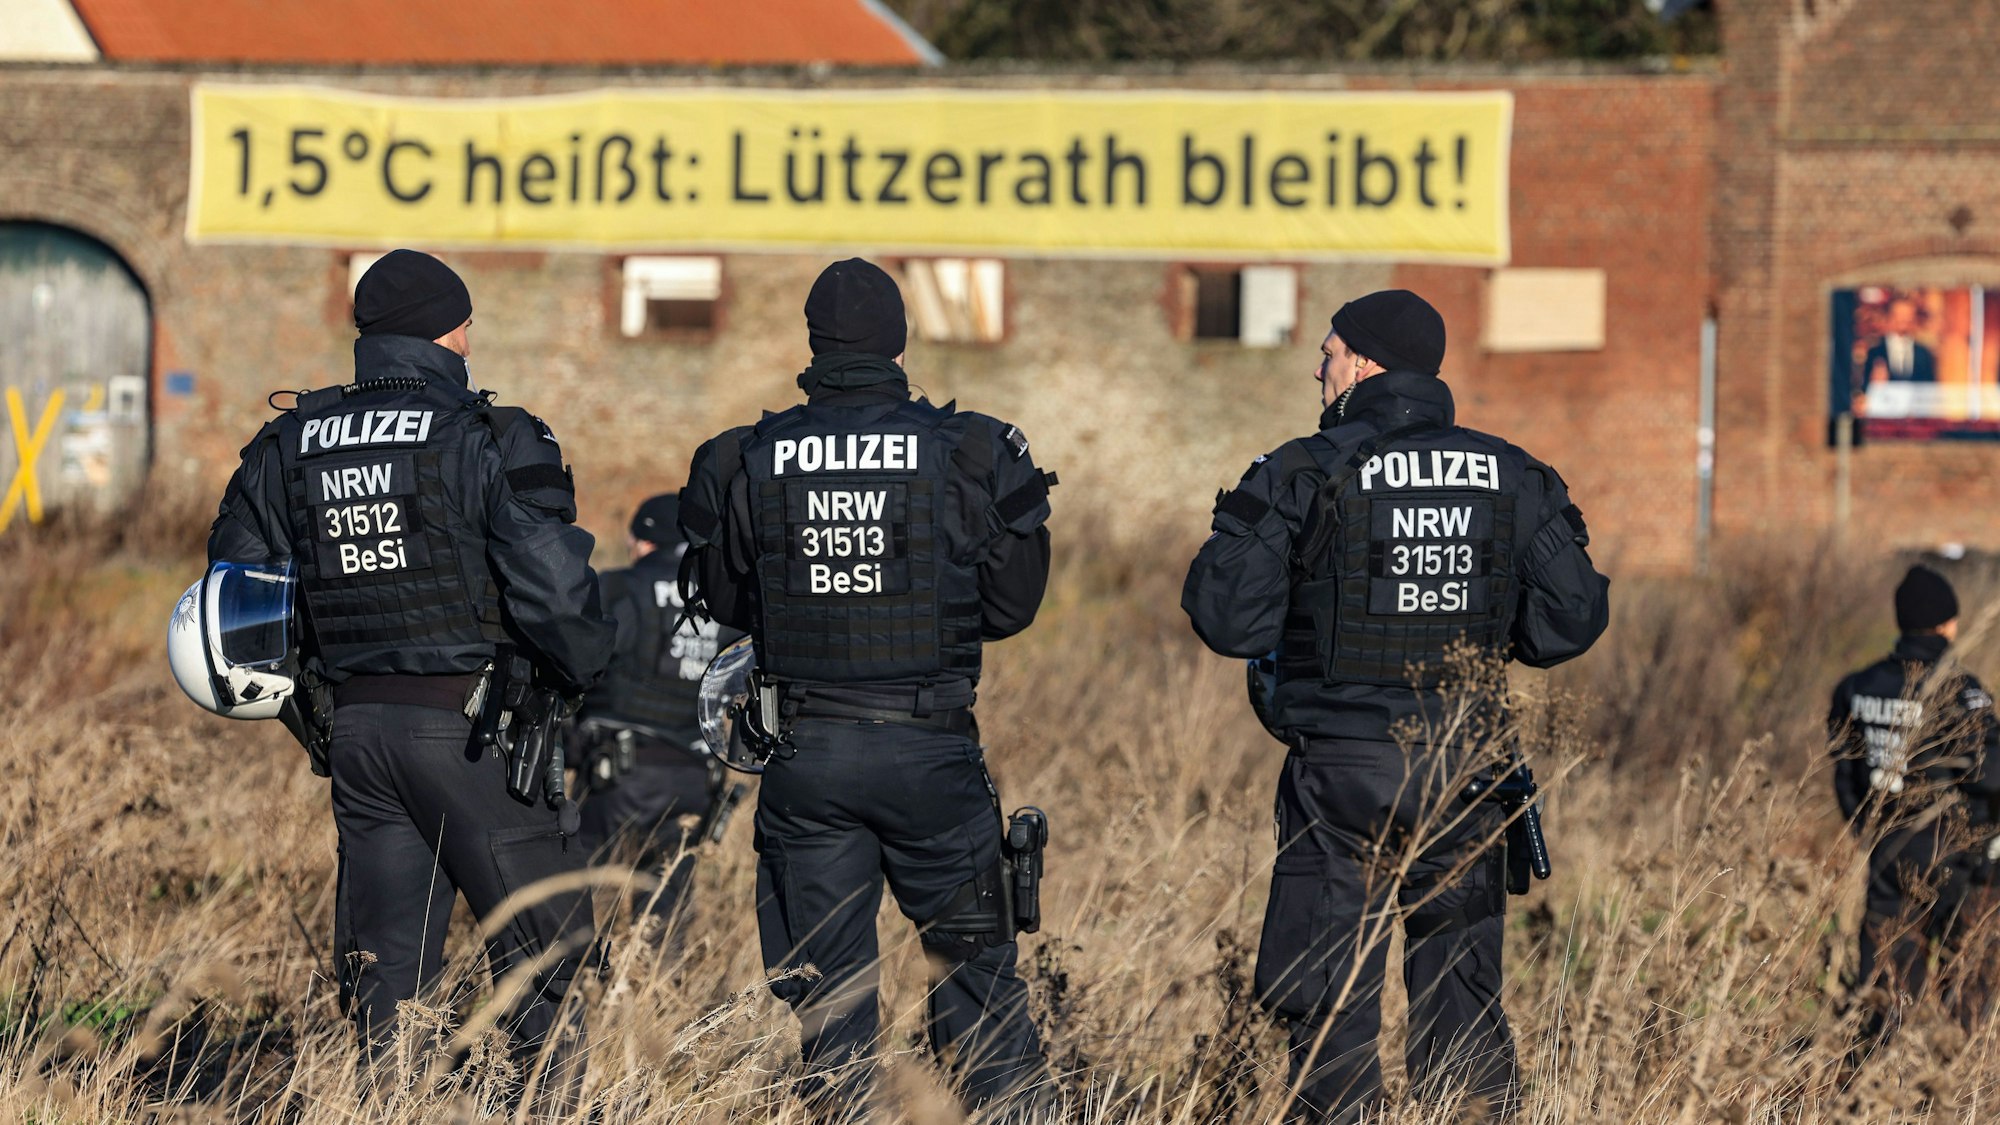 Polizisten stehen in Lützerath am Rande des Braunkohletagebaus, im Hintergrund hängt ein Banner „1,5°C heißt:Lützerath bleibt!“